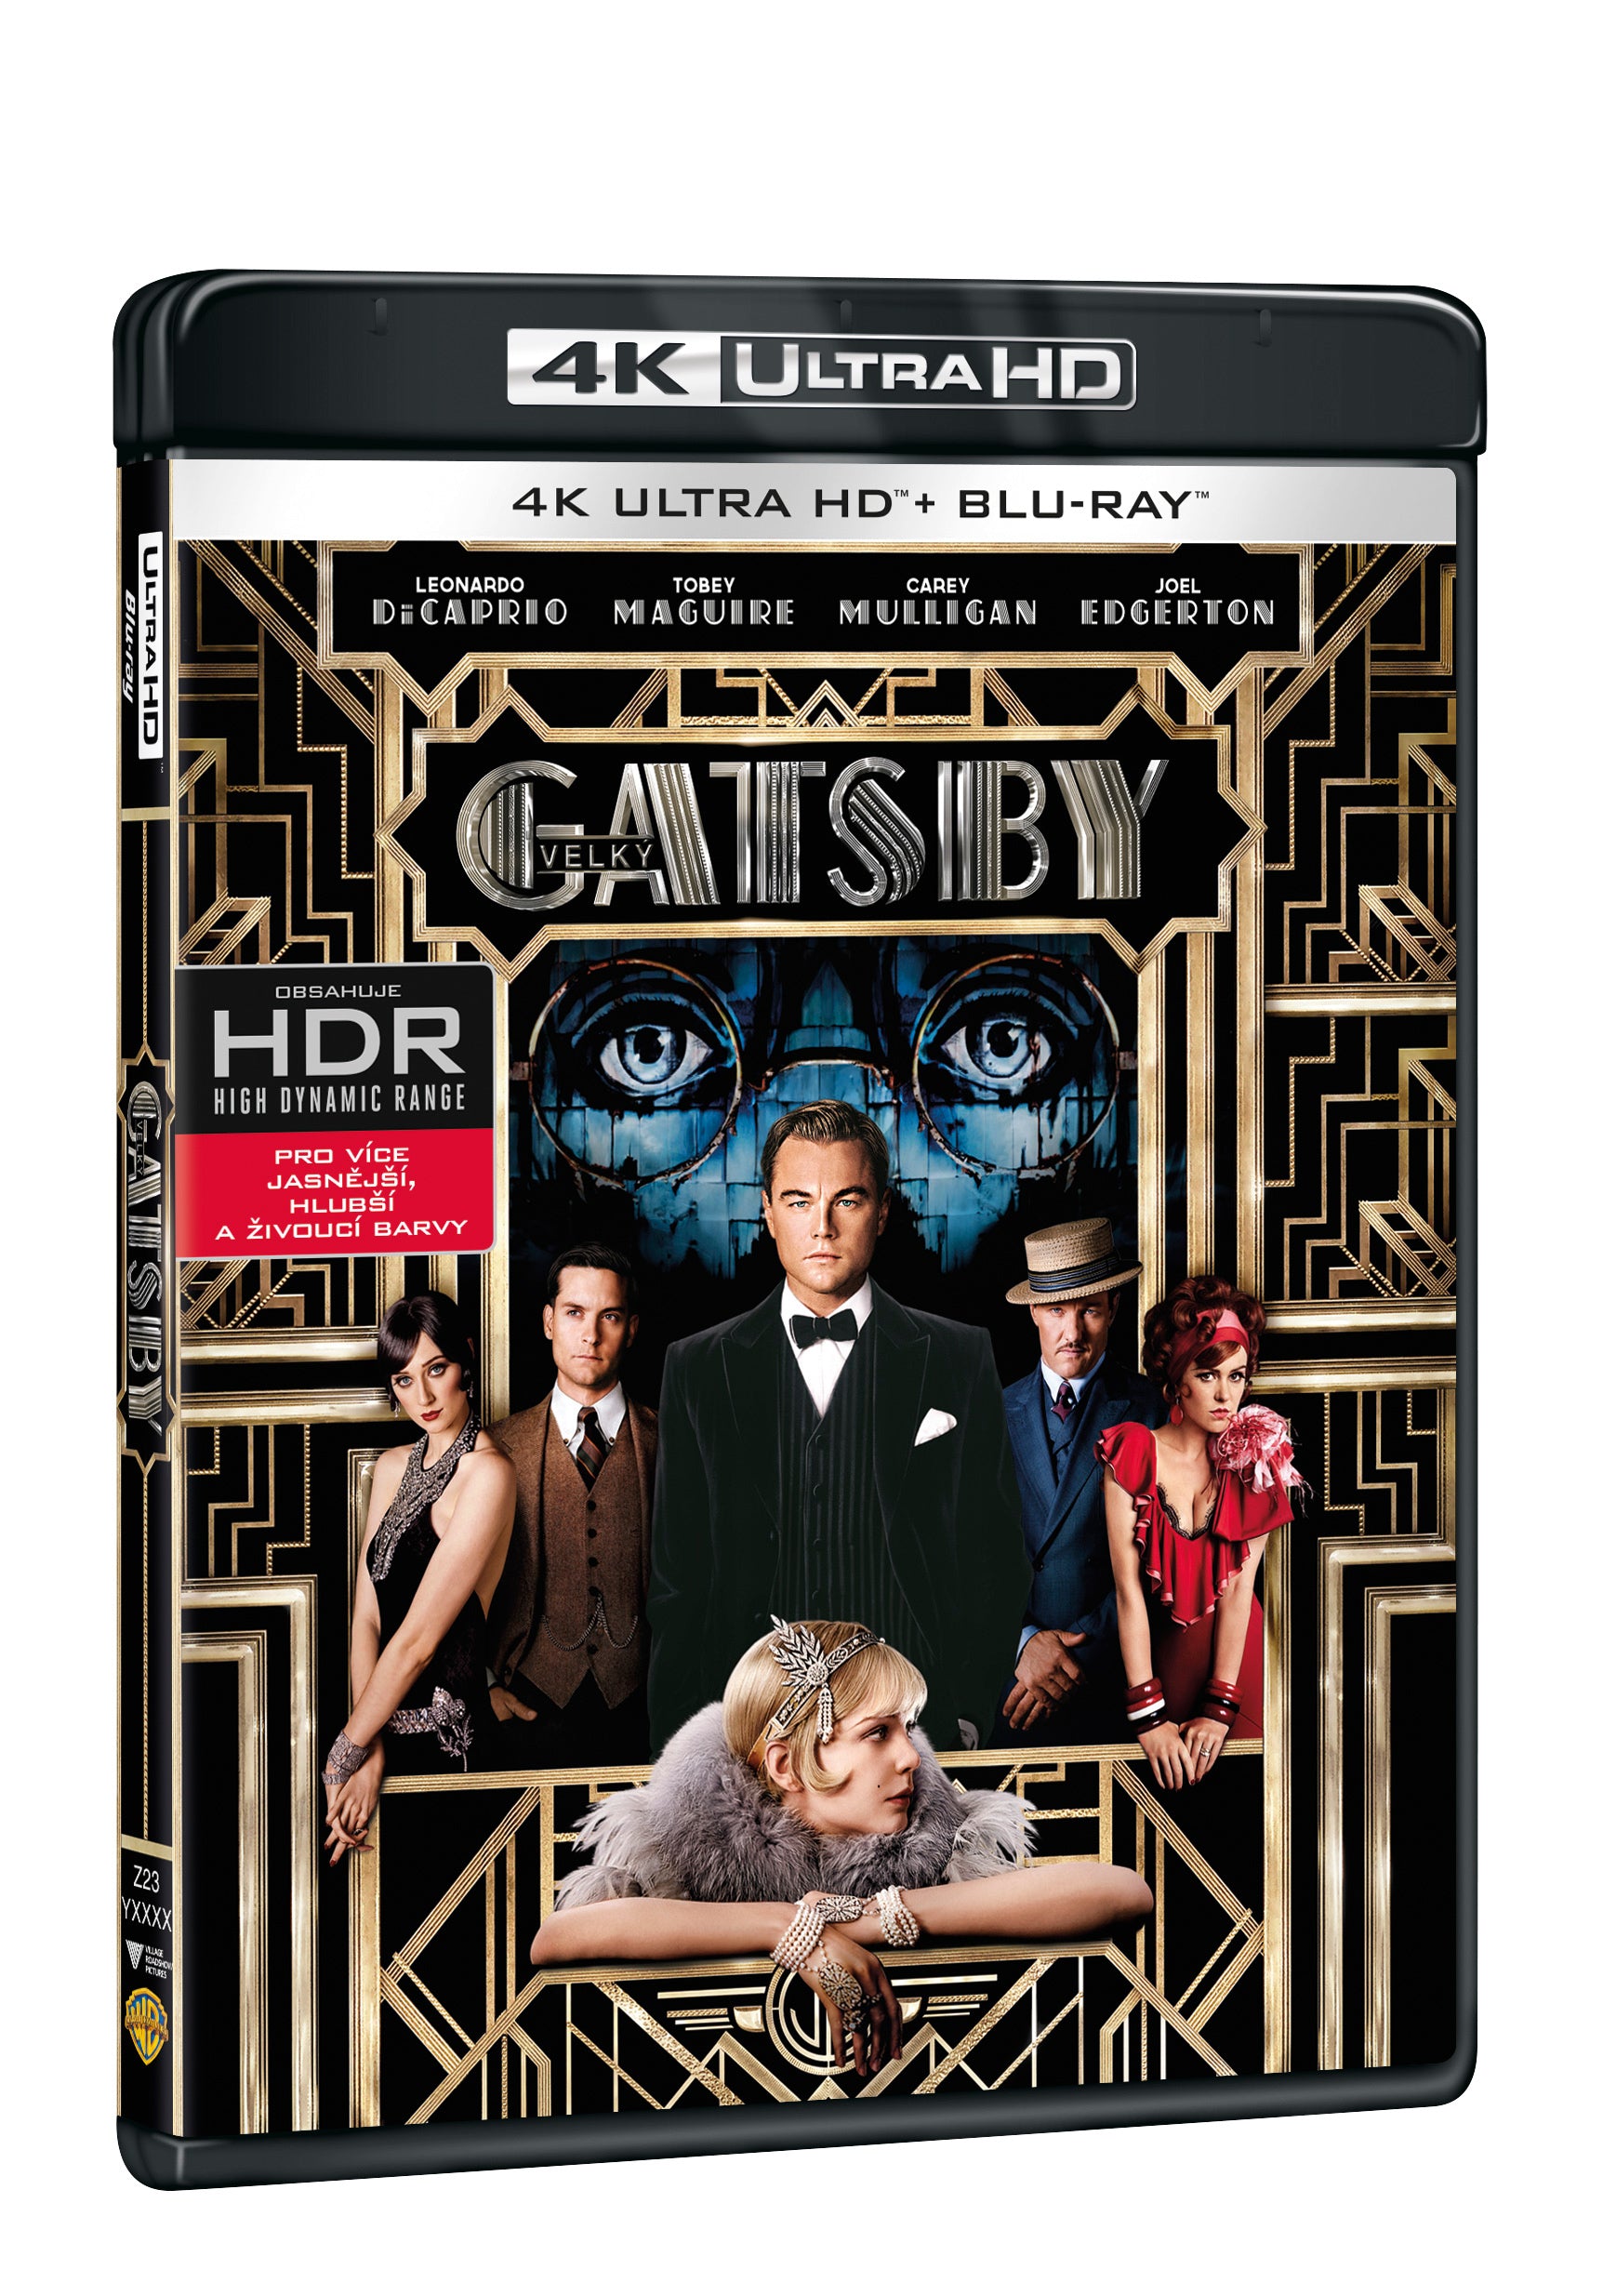 Velky Gatsby 2BD (UHD+BD) / The Great Gatsby - Czech version